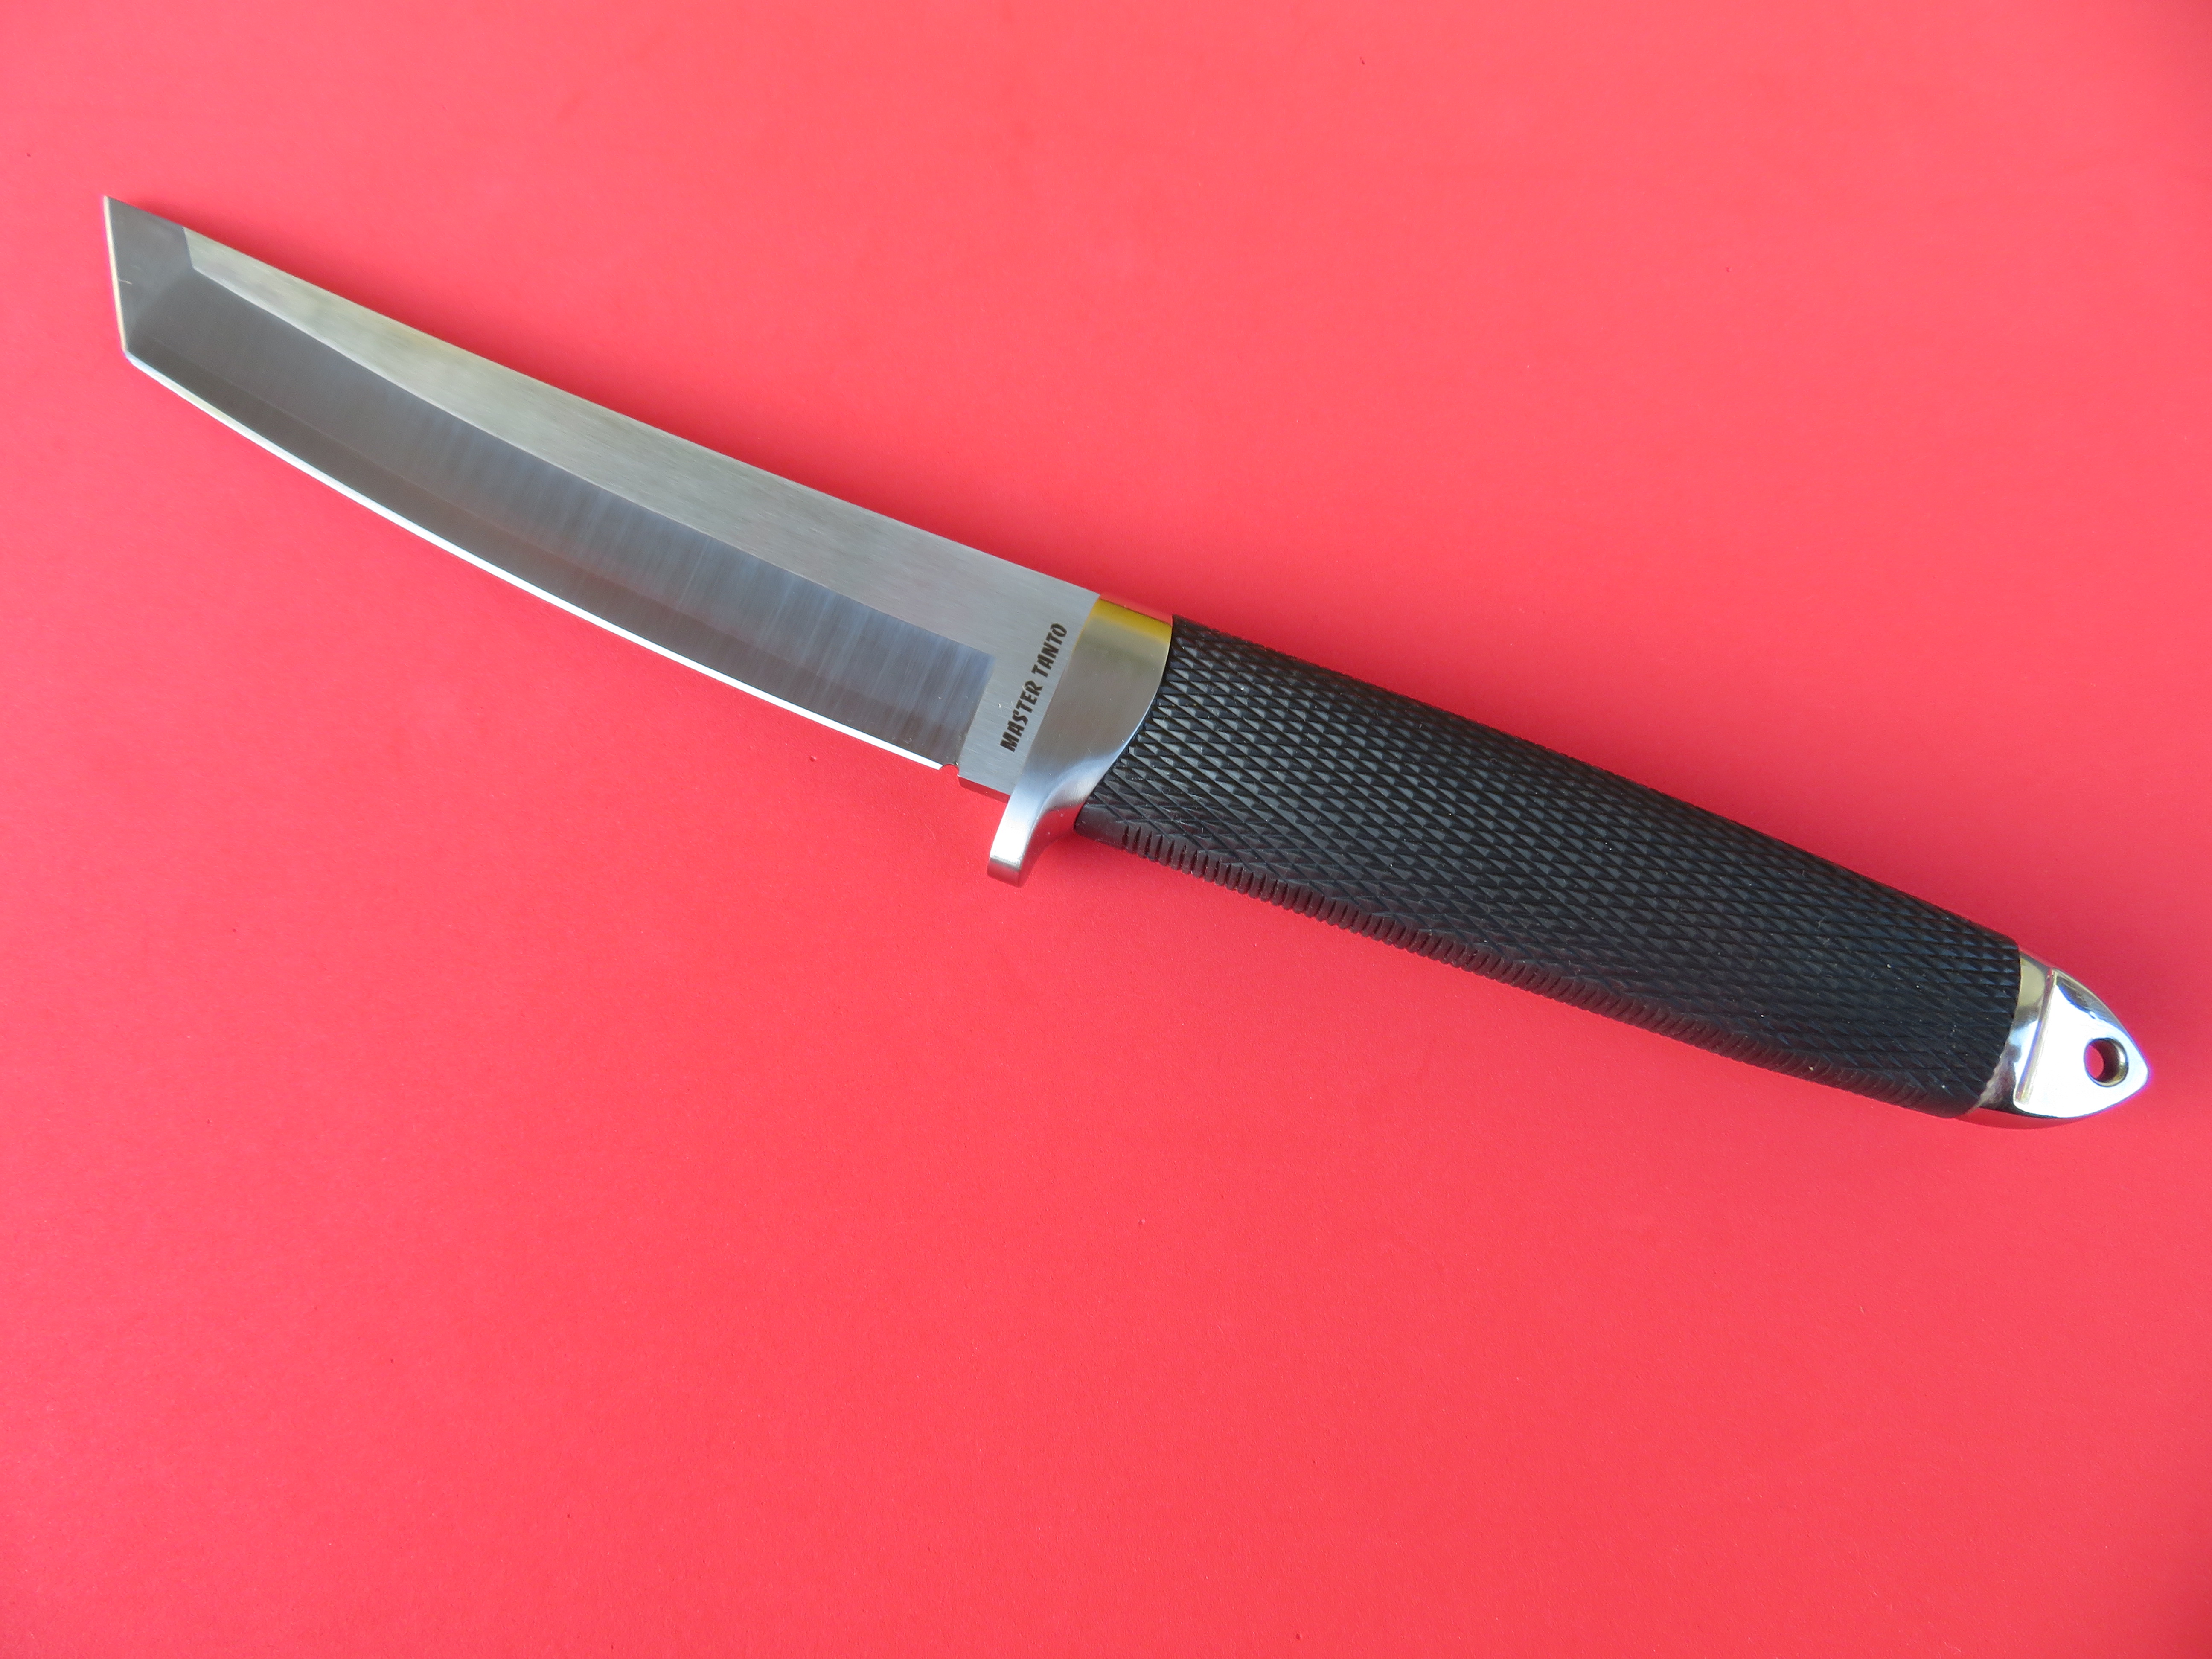 Na čepeli nože Mastr Tanto je patrná linka předělu mezi oběma vrstvami oceli.